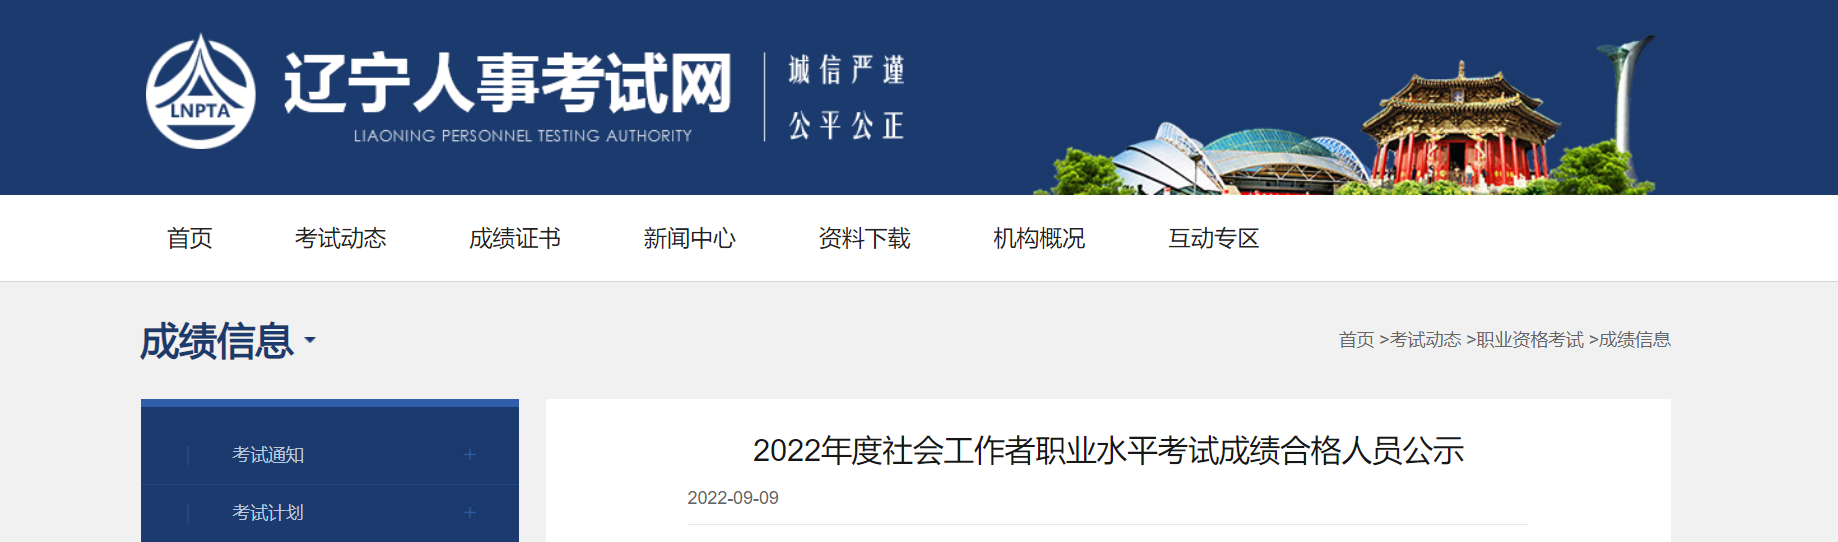 2022年辽宁社会工作者职业水平考试成绩合格人员公示